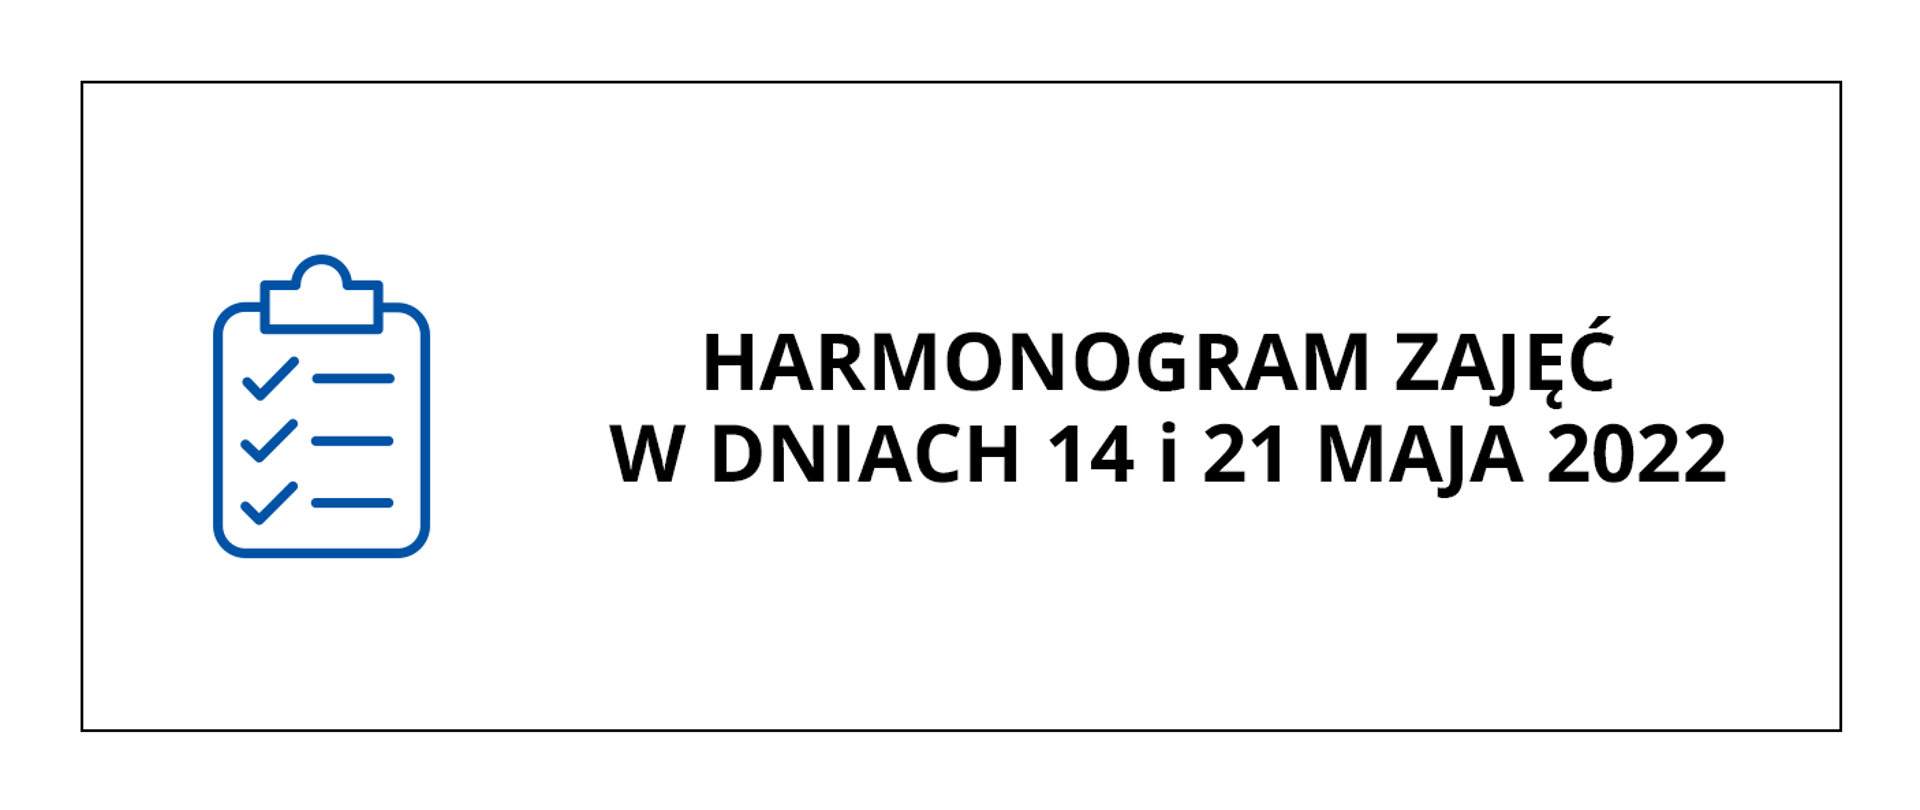 Zdjęcie przedstawia baner o białym tle, po lewej stronie jest niebieska ikona listy zadań, w centrum i po prawej stronie jest czarny napis drukowanymi literami: HARMONOGRAM ZAJĘĆ W DNIACH 14 i 21 MAJA 2022